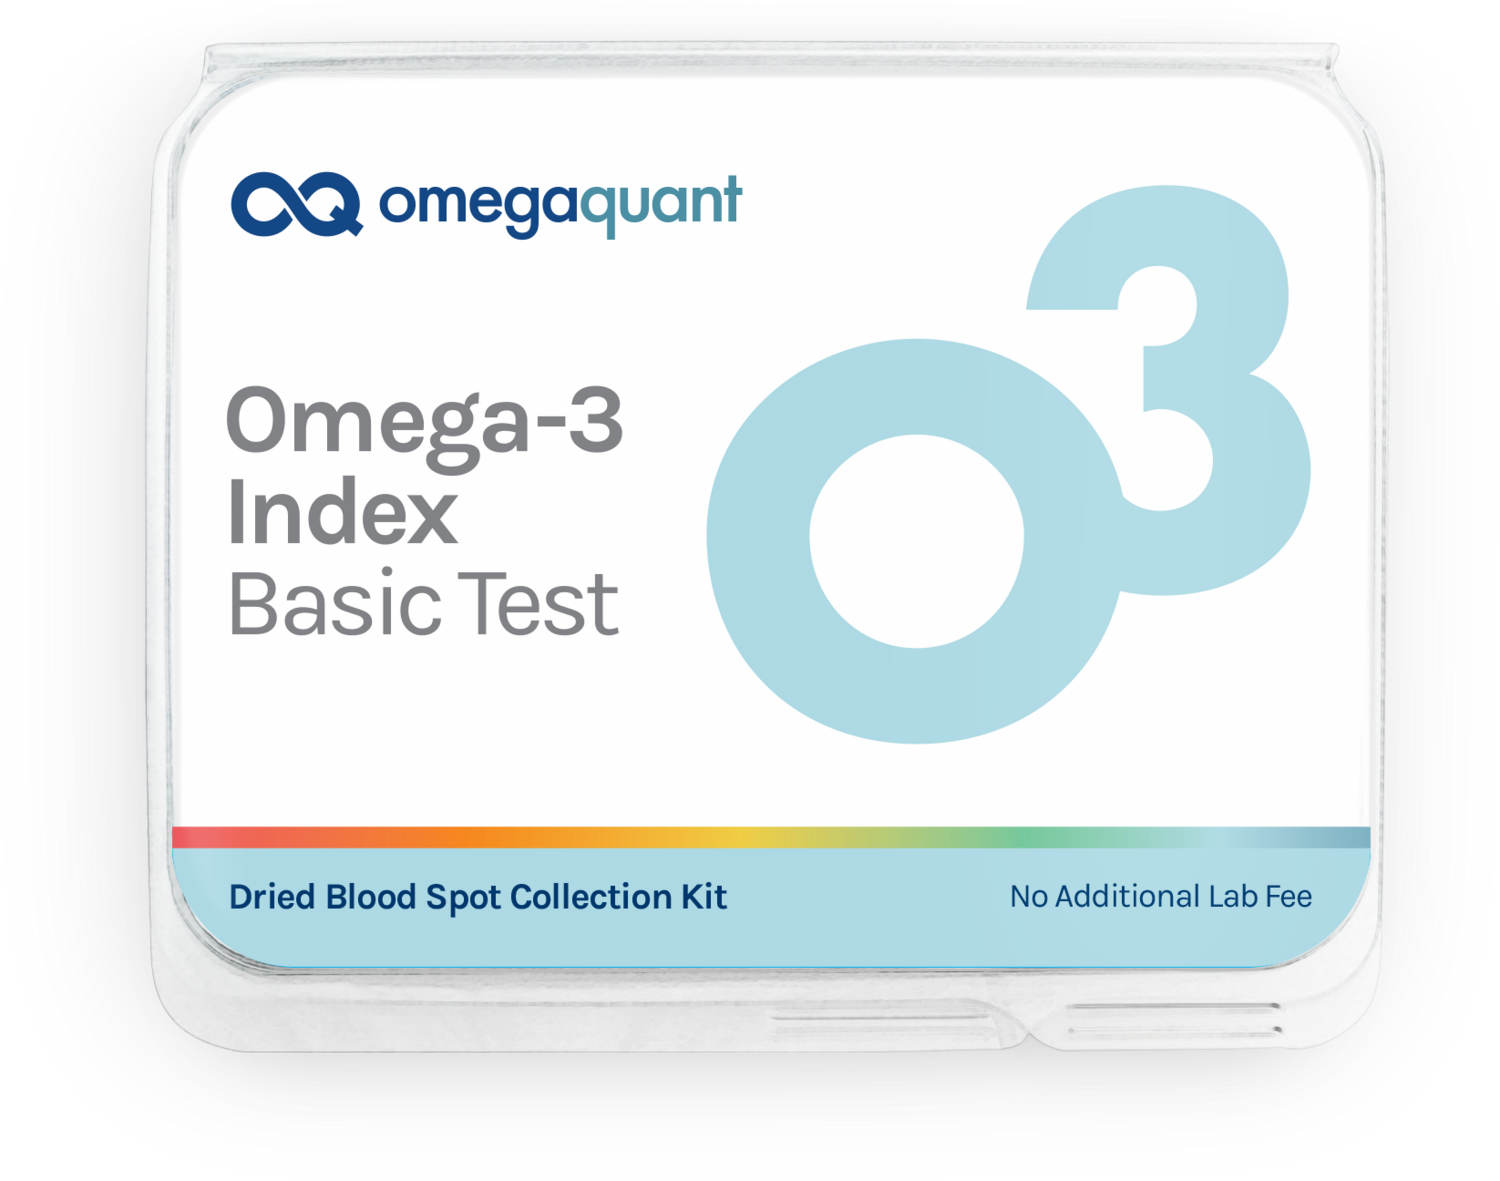 Omega-3 Index- Basic